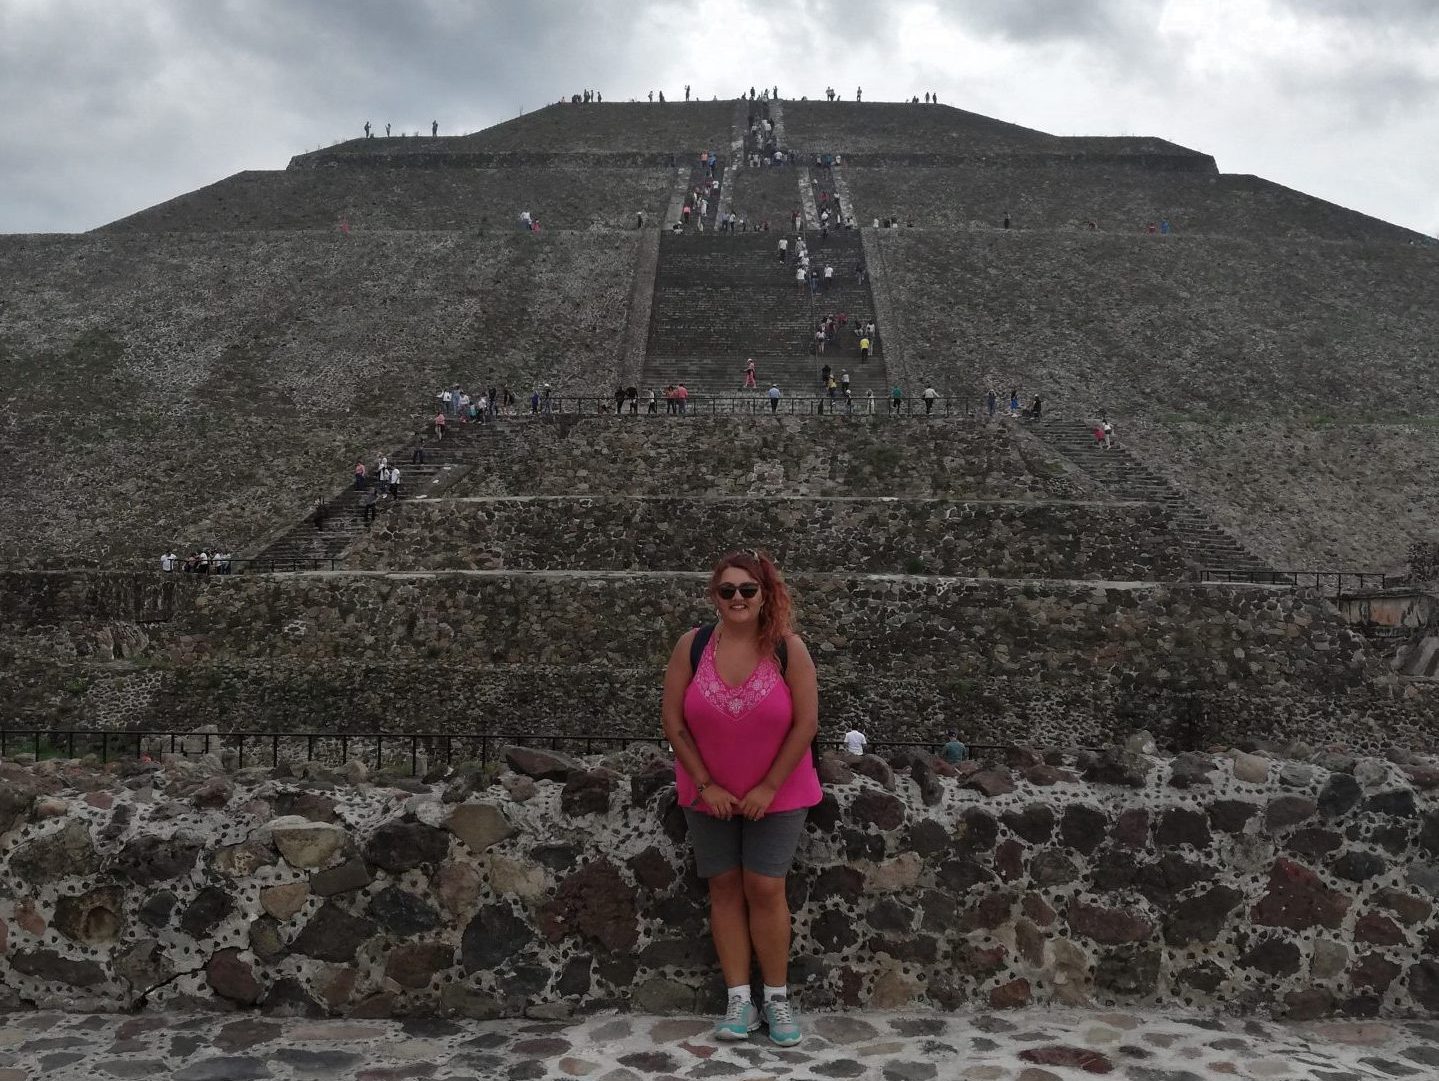 Foto con la Pirámide del Sol de Teotihuacán de fondo.